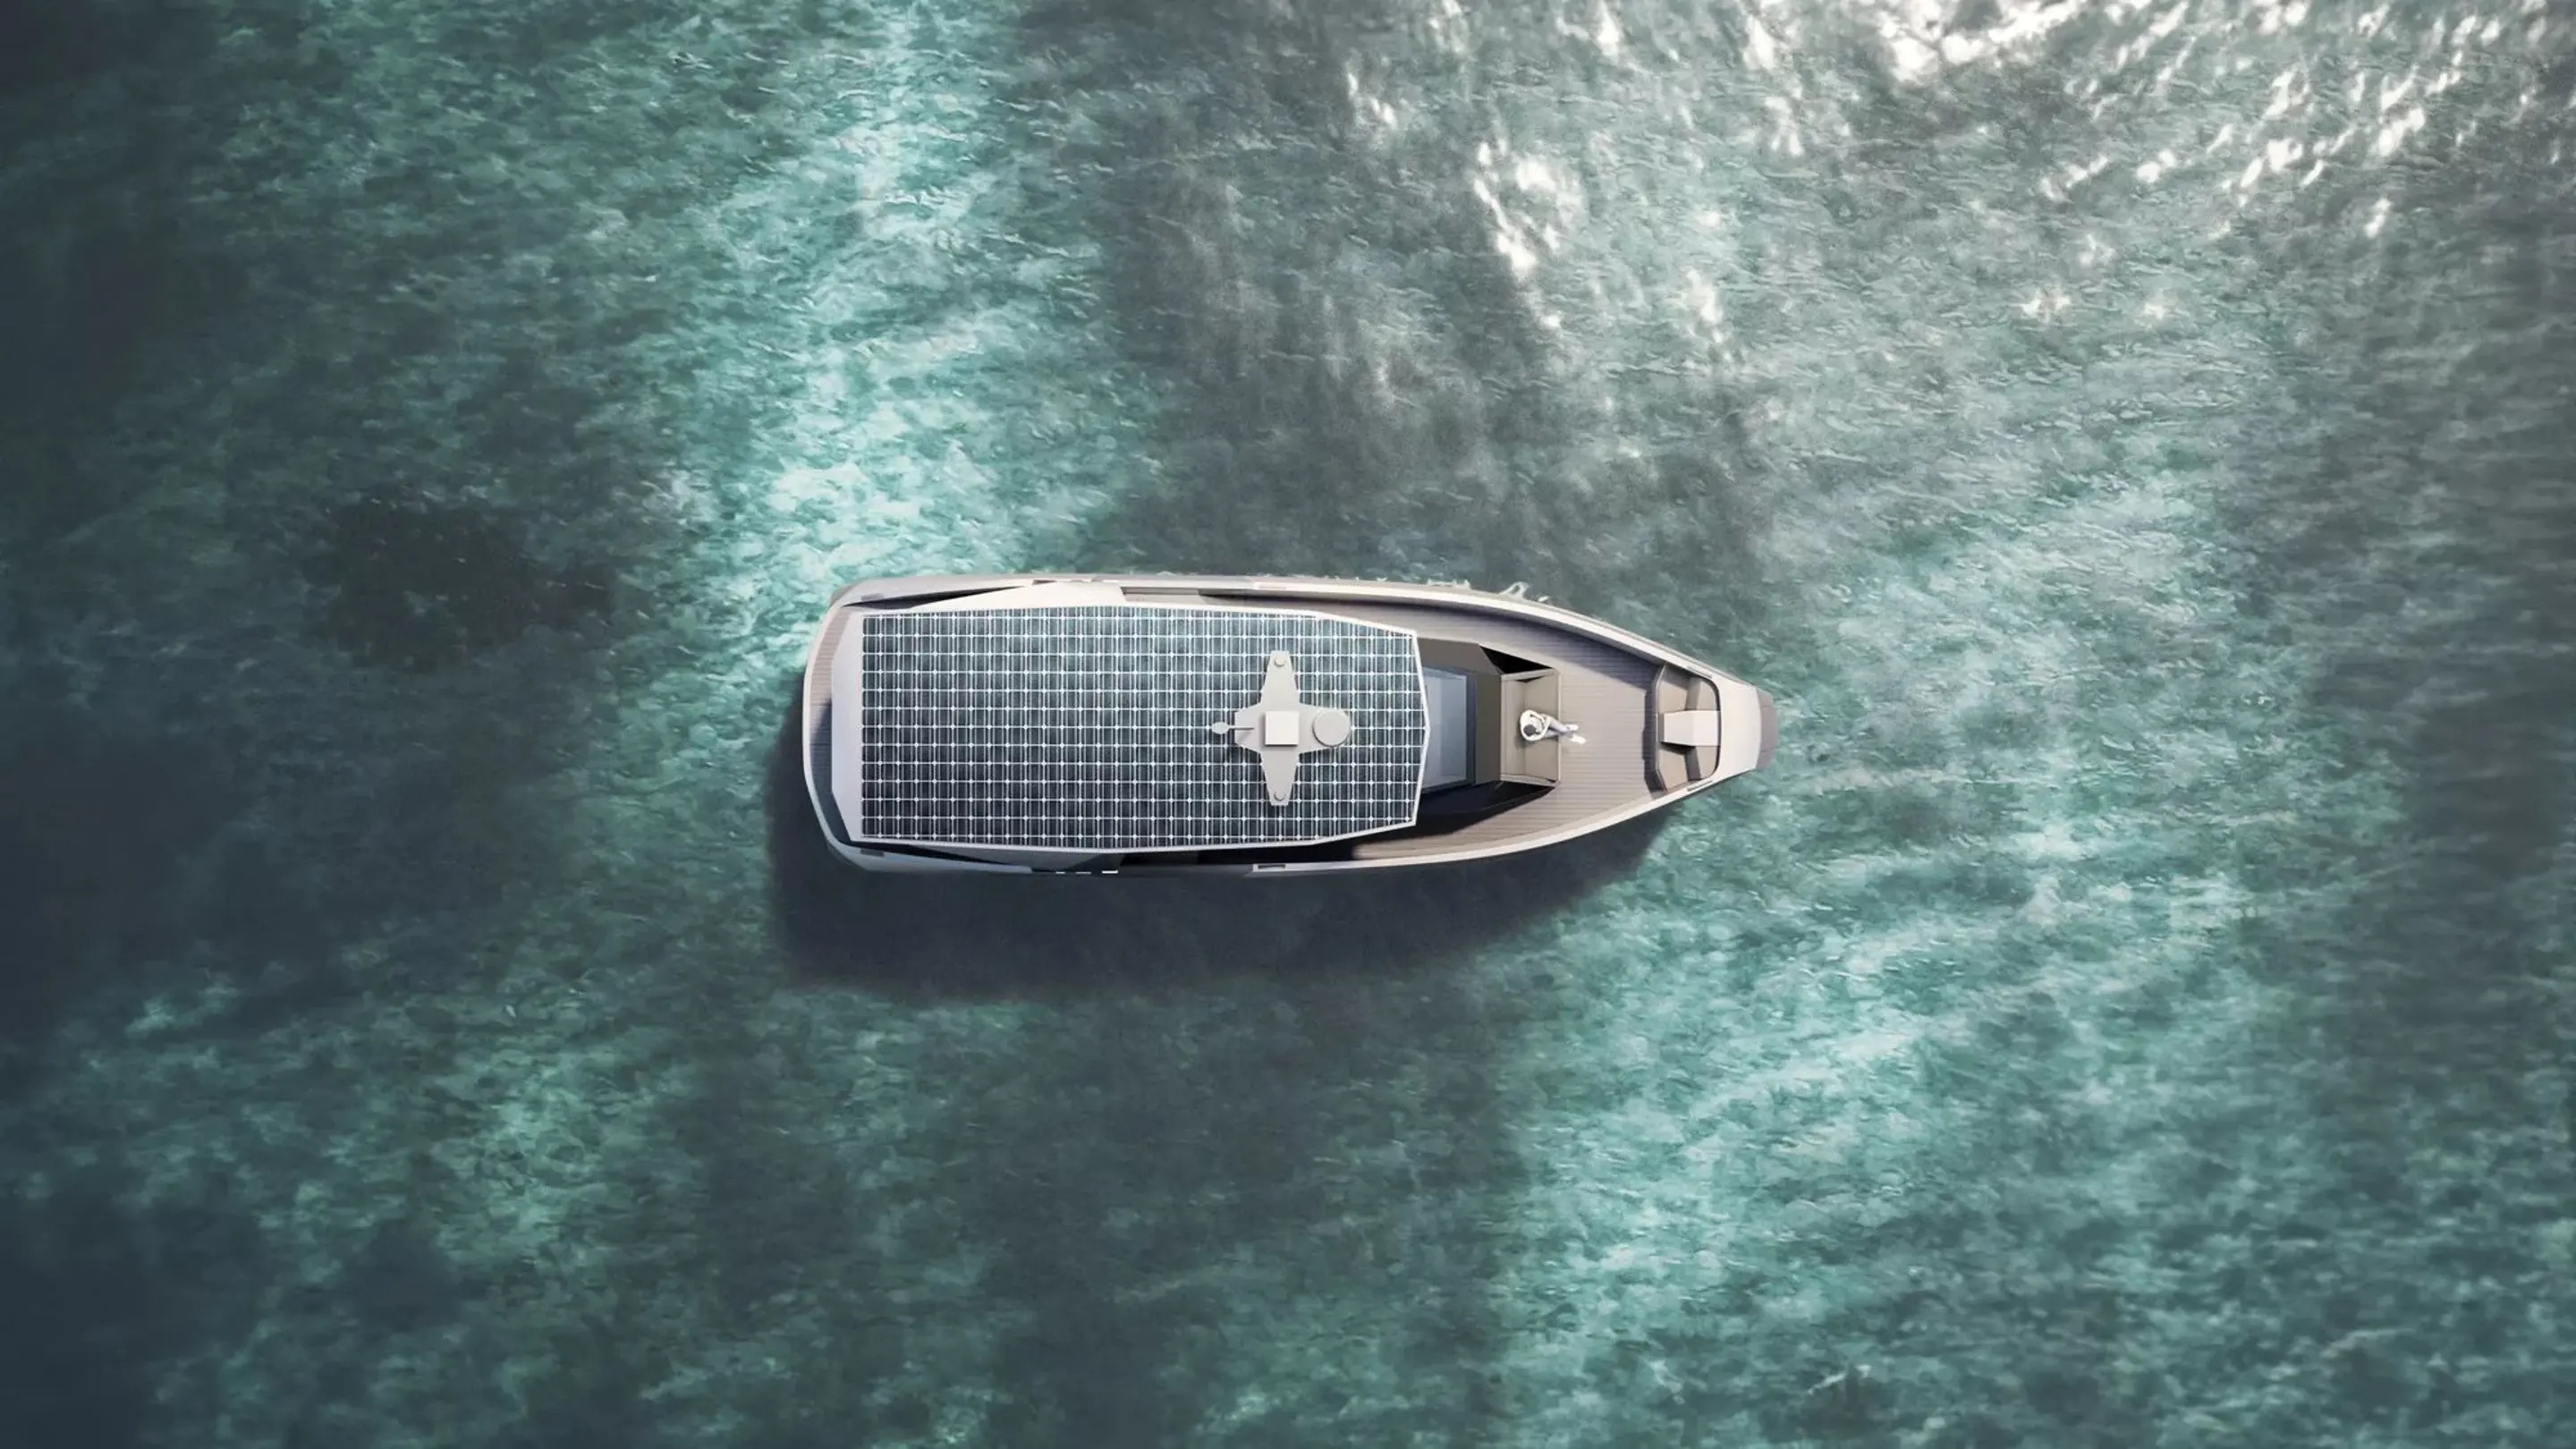 Автопроизводитель BMW построит рекордно большую электрическую яхту